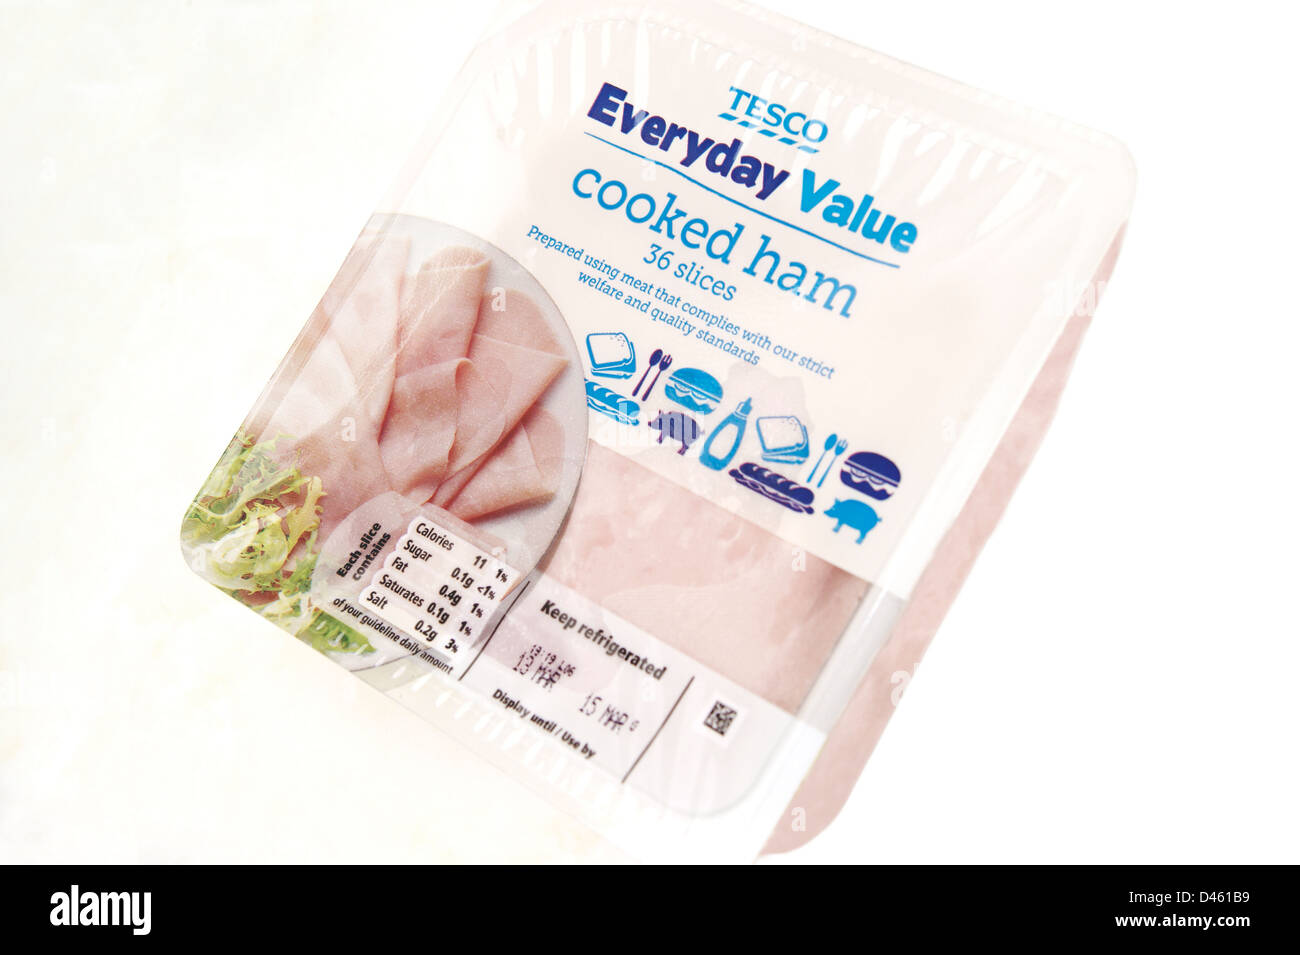 Un paquet de valeur quotidienne jambon cuit Tesco (préparée à l'aide de la viande qui est conforme aux strictes normes de qualité et de bien-être social) Banque D'Images